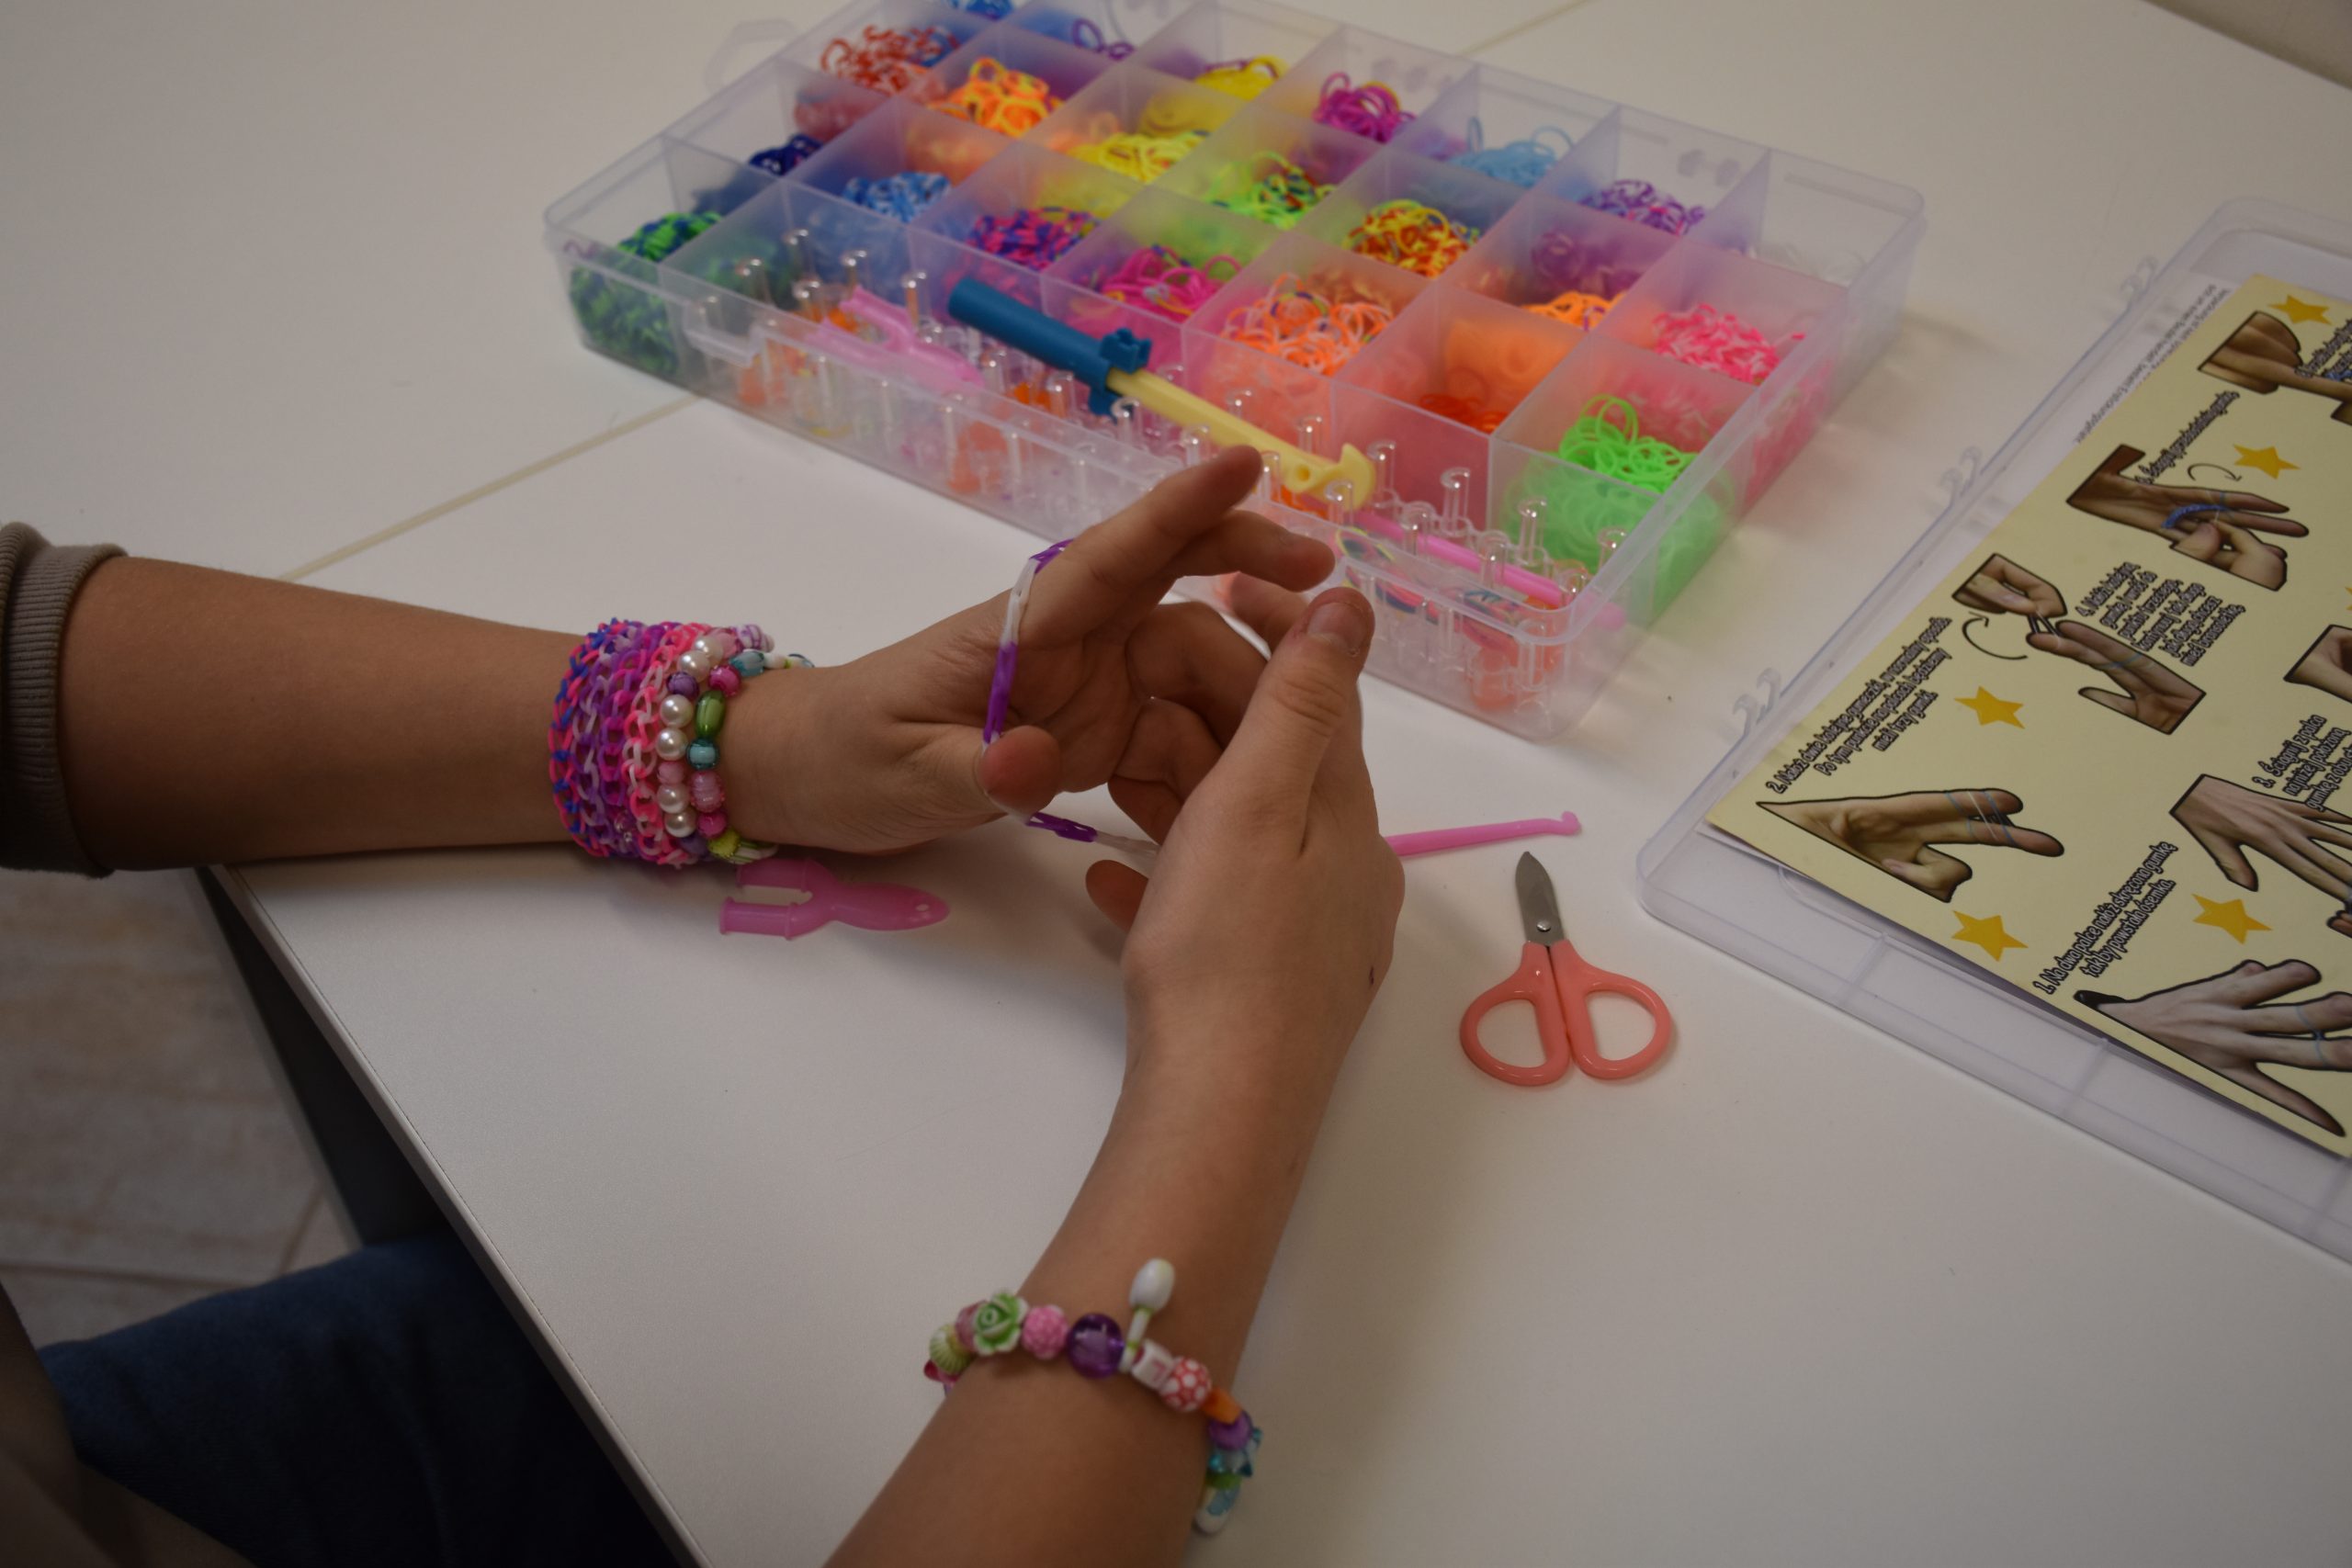 Tworzenie bransoletki - kolorowe zdjęcie przedstawiające dłonie podczas plecenie bransoletki.